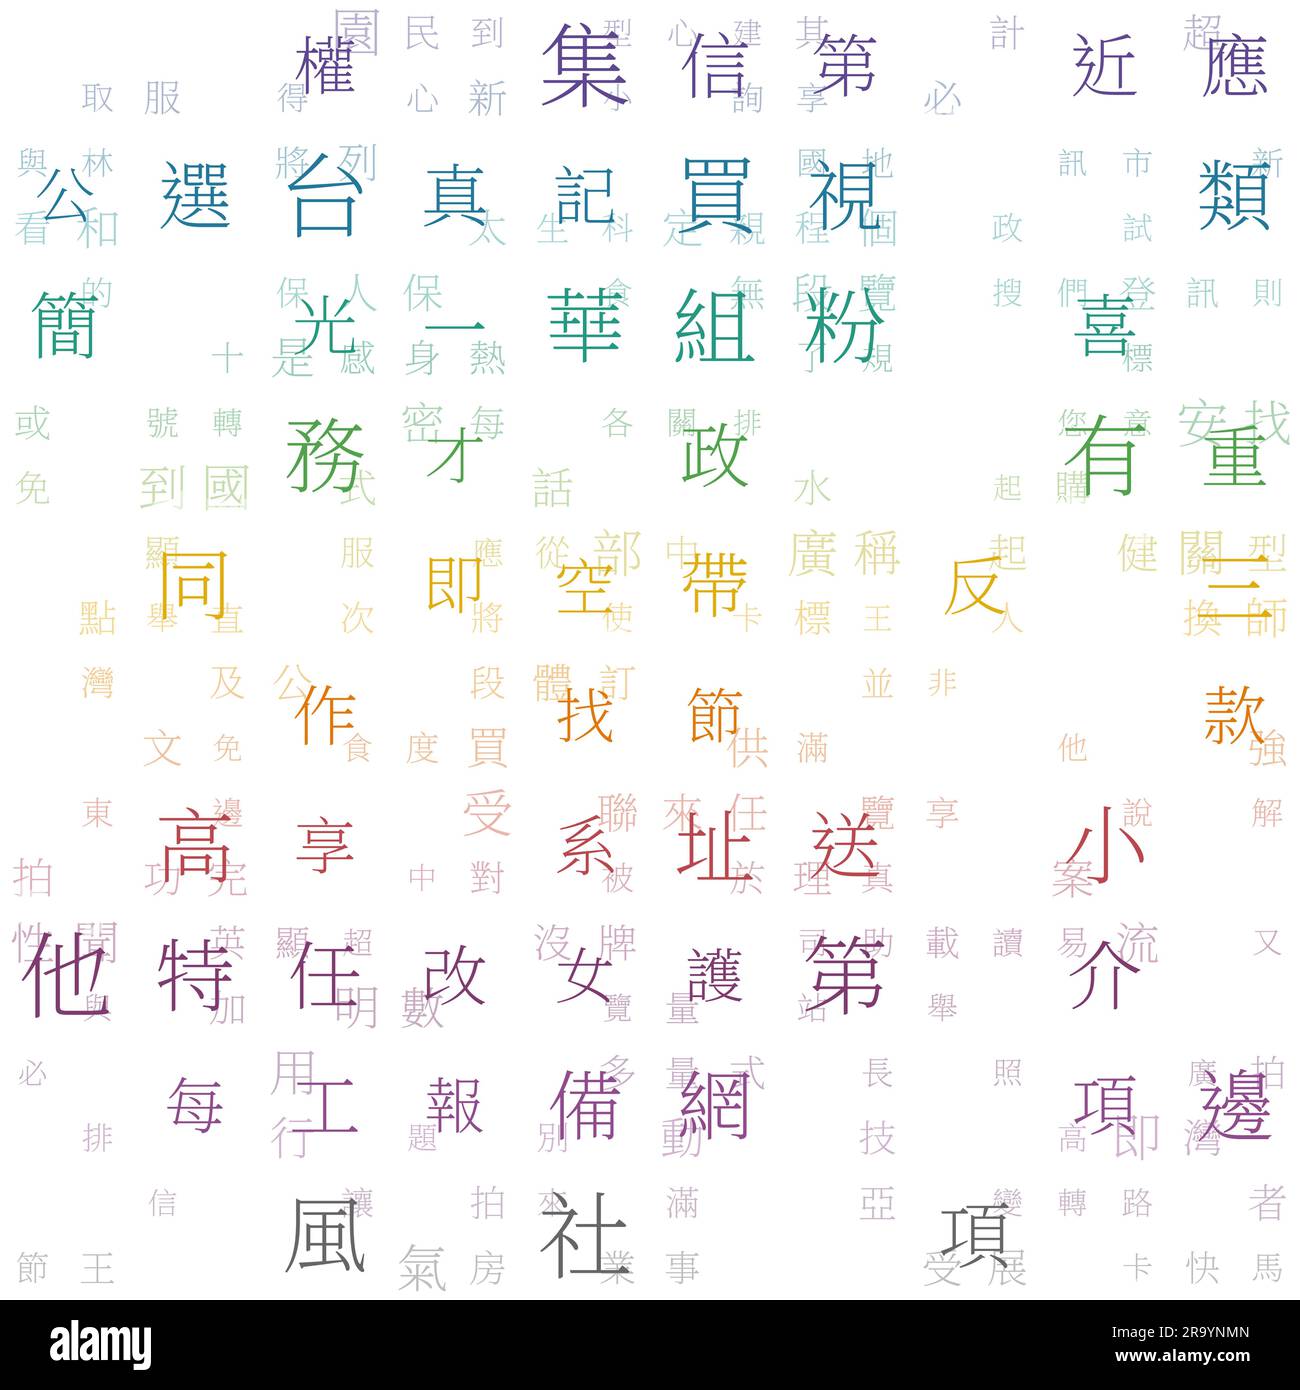 Technologischer Hintergrund. Elemente vereinfachter chinesischer Zeichen (Hongkong). Gradientenmatrix-Muster. Hintergrund für spektrale Farbdesigns. Fliesenhaus Stock Vektor